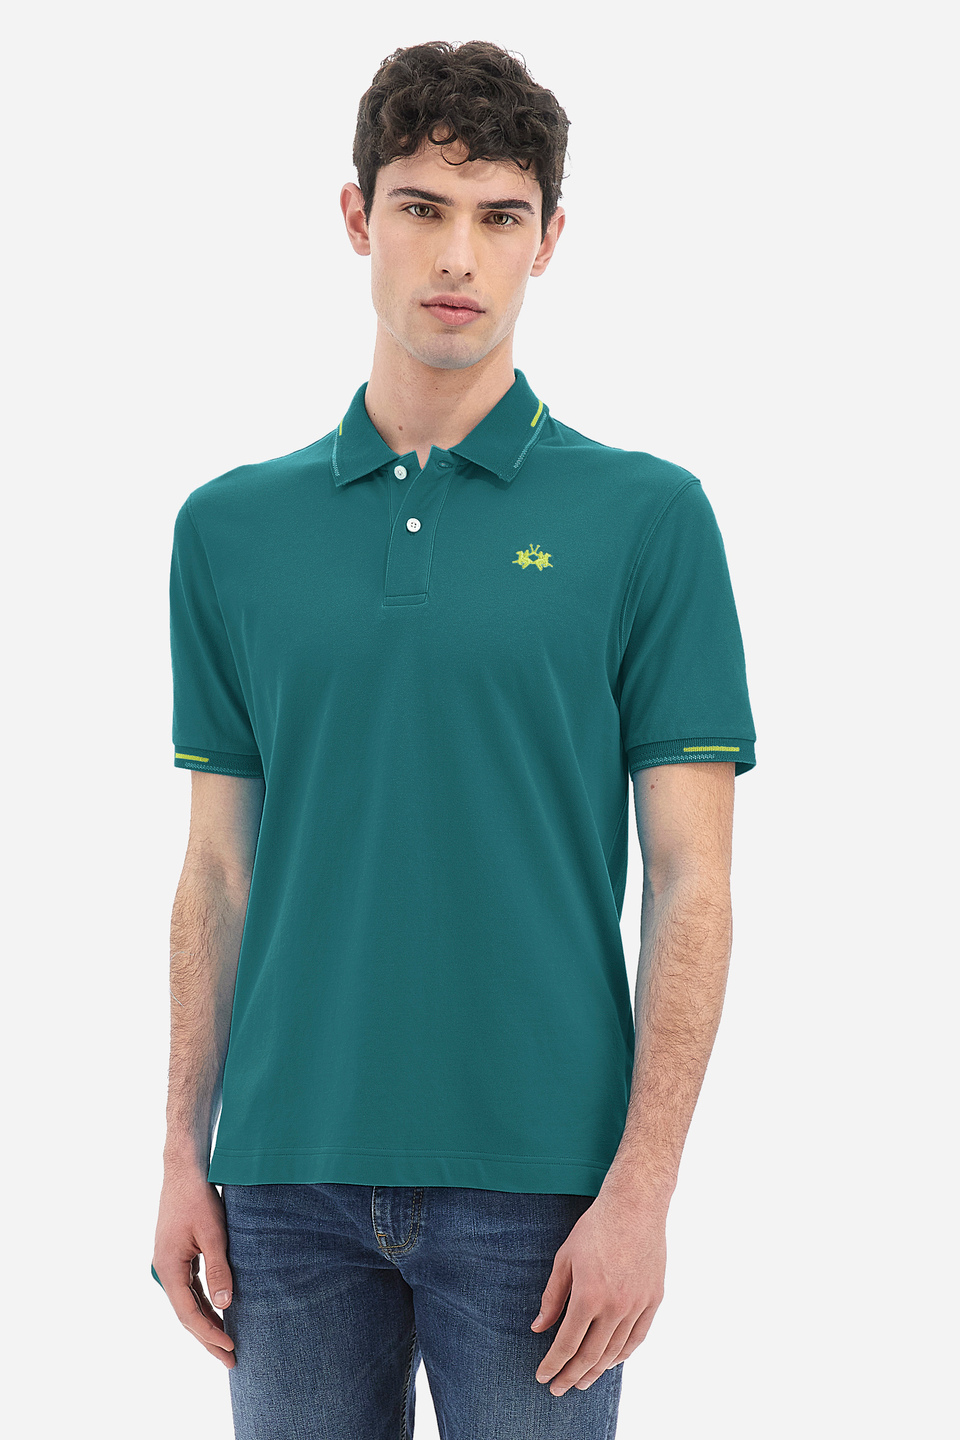 afspejle Forskudssalg Daggry Men's short-sleeved polo shirt in regular fit stretch cotton - Valene  Fanfare La Martina | Shop Online